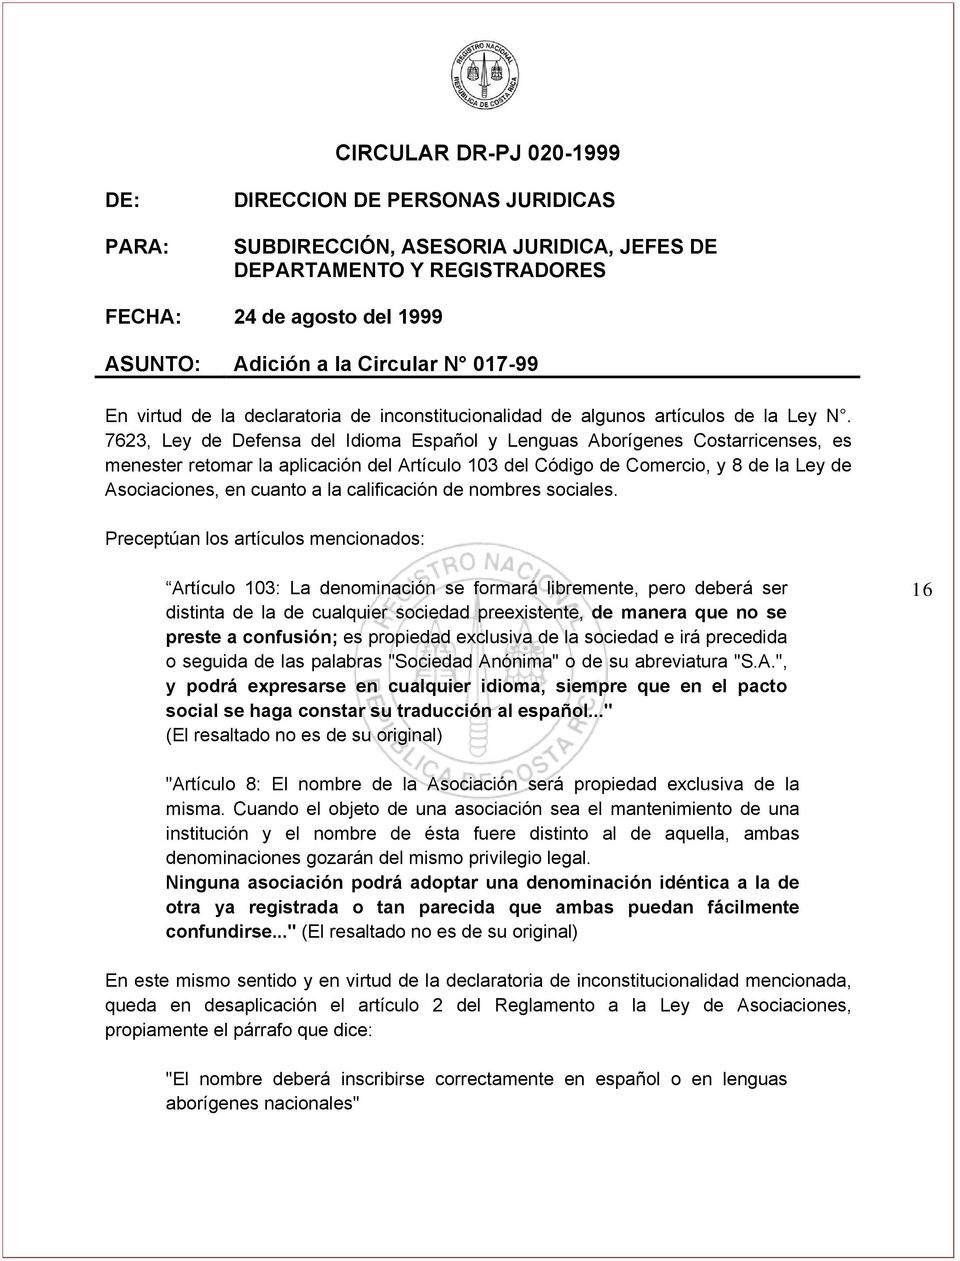 7623, Ley de Defensa del Idioma Español y Lenguas Aborígenes Costarricenses, es menester retomar la aplicación del Artículo 103 del Código de Comercio, y 8 de la Ley de Asociaciones, en cuanto a la